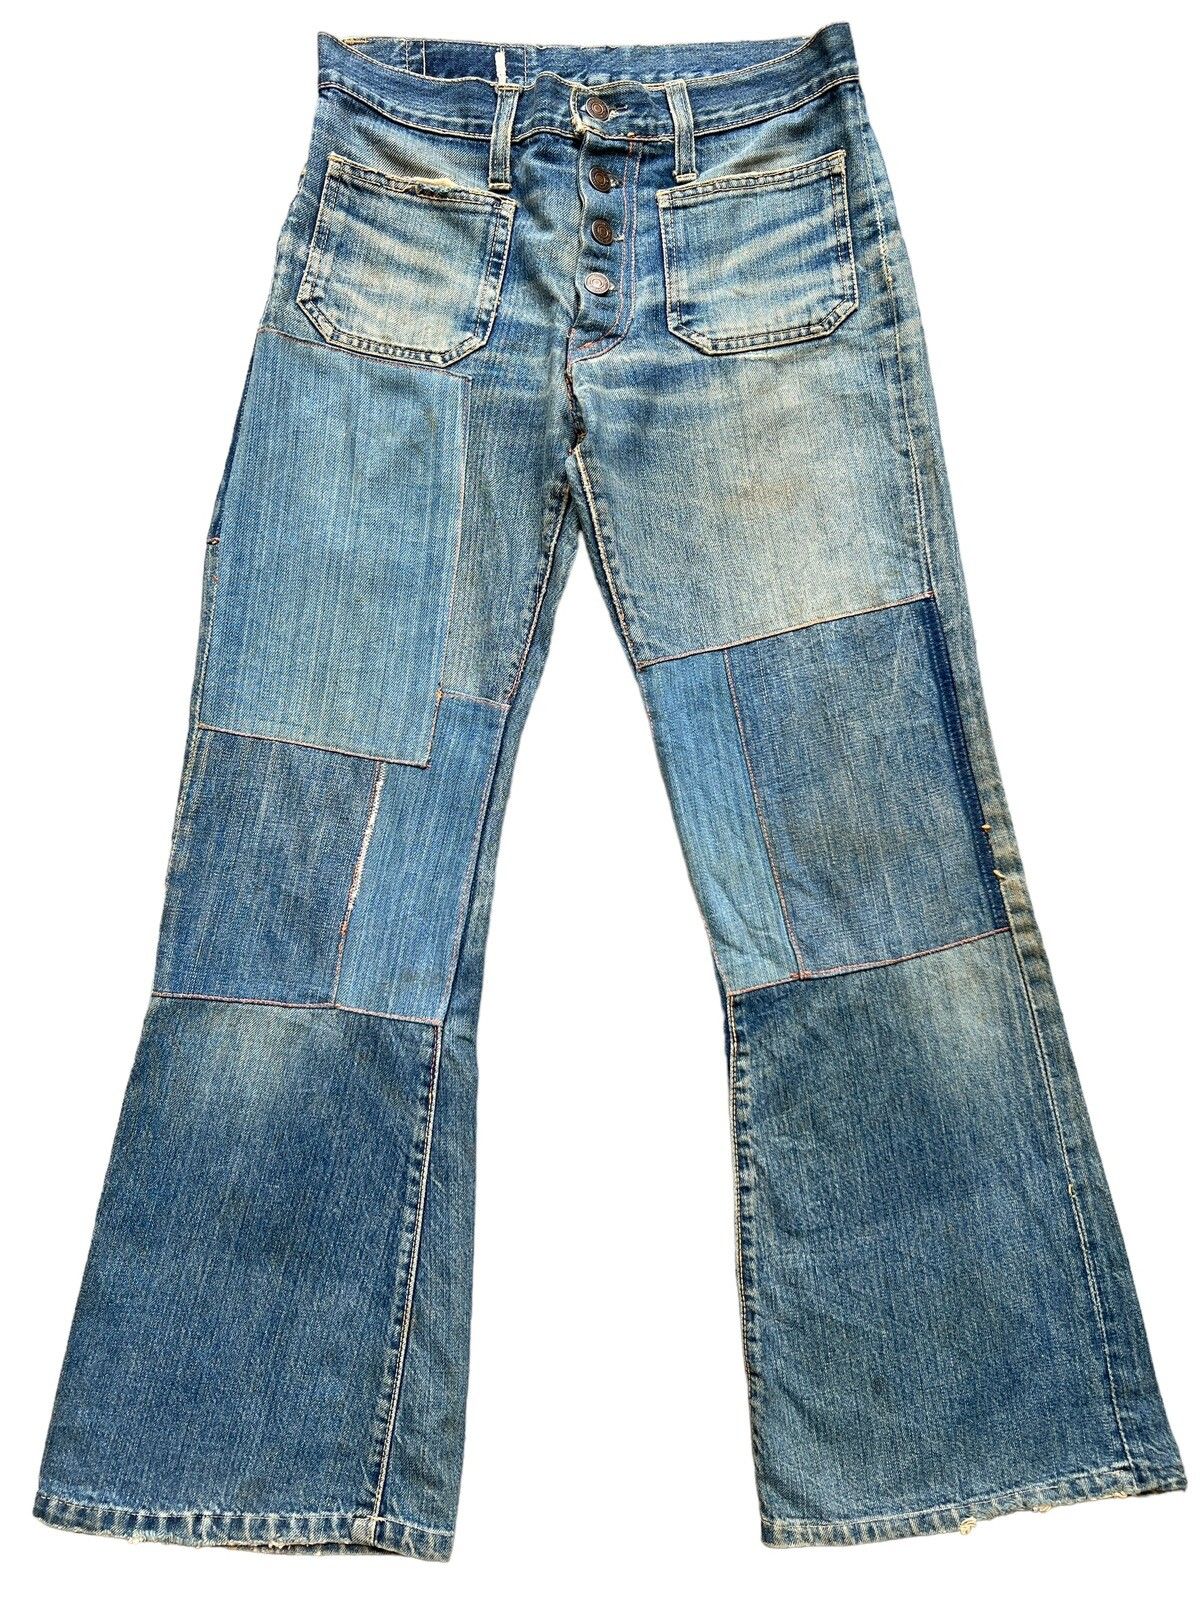 Hype - Vintage 80s Edwin Bushpant Patchwork Distressed Flare Jeans - 2